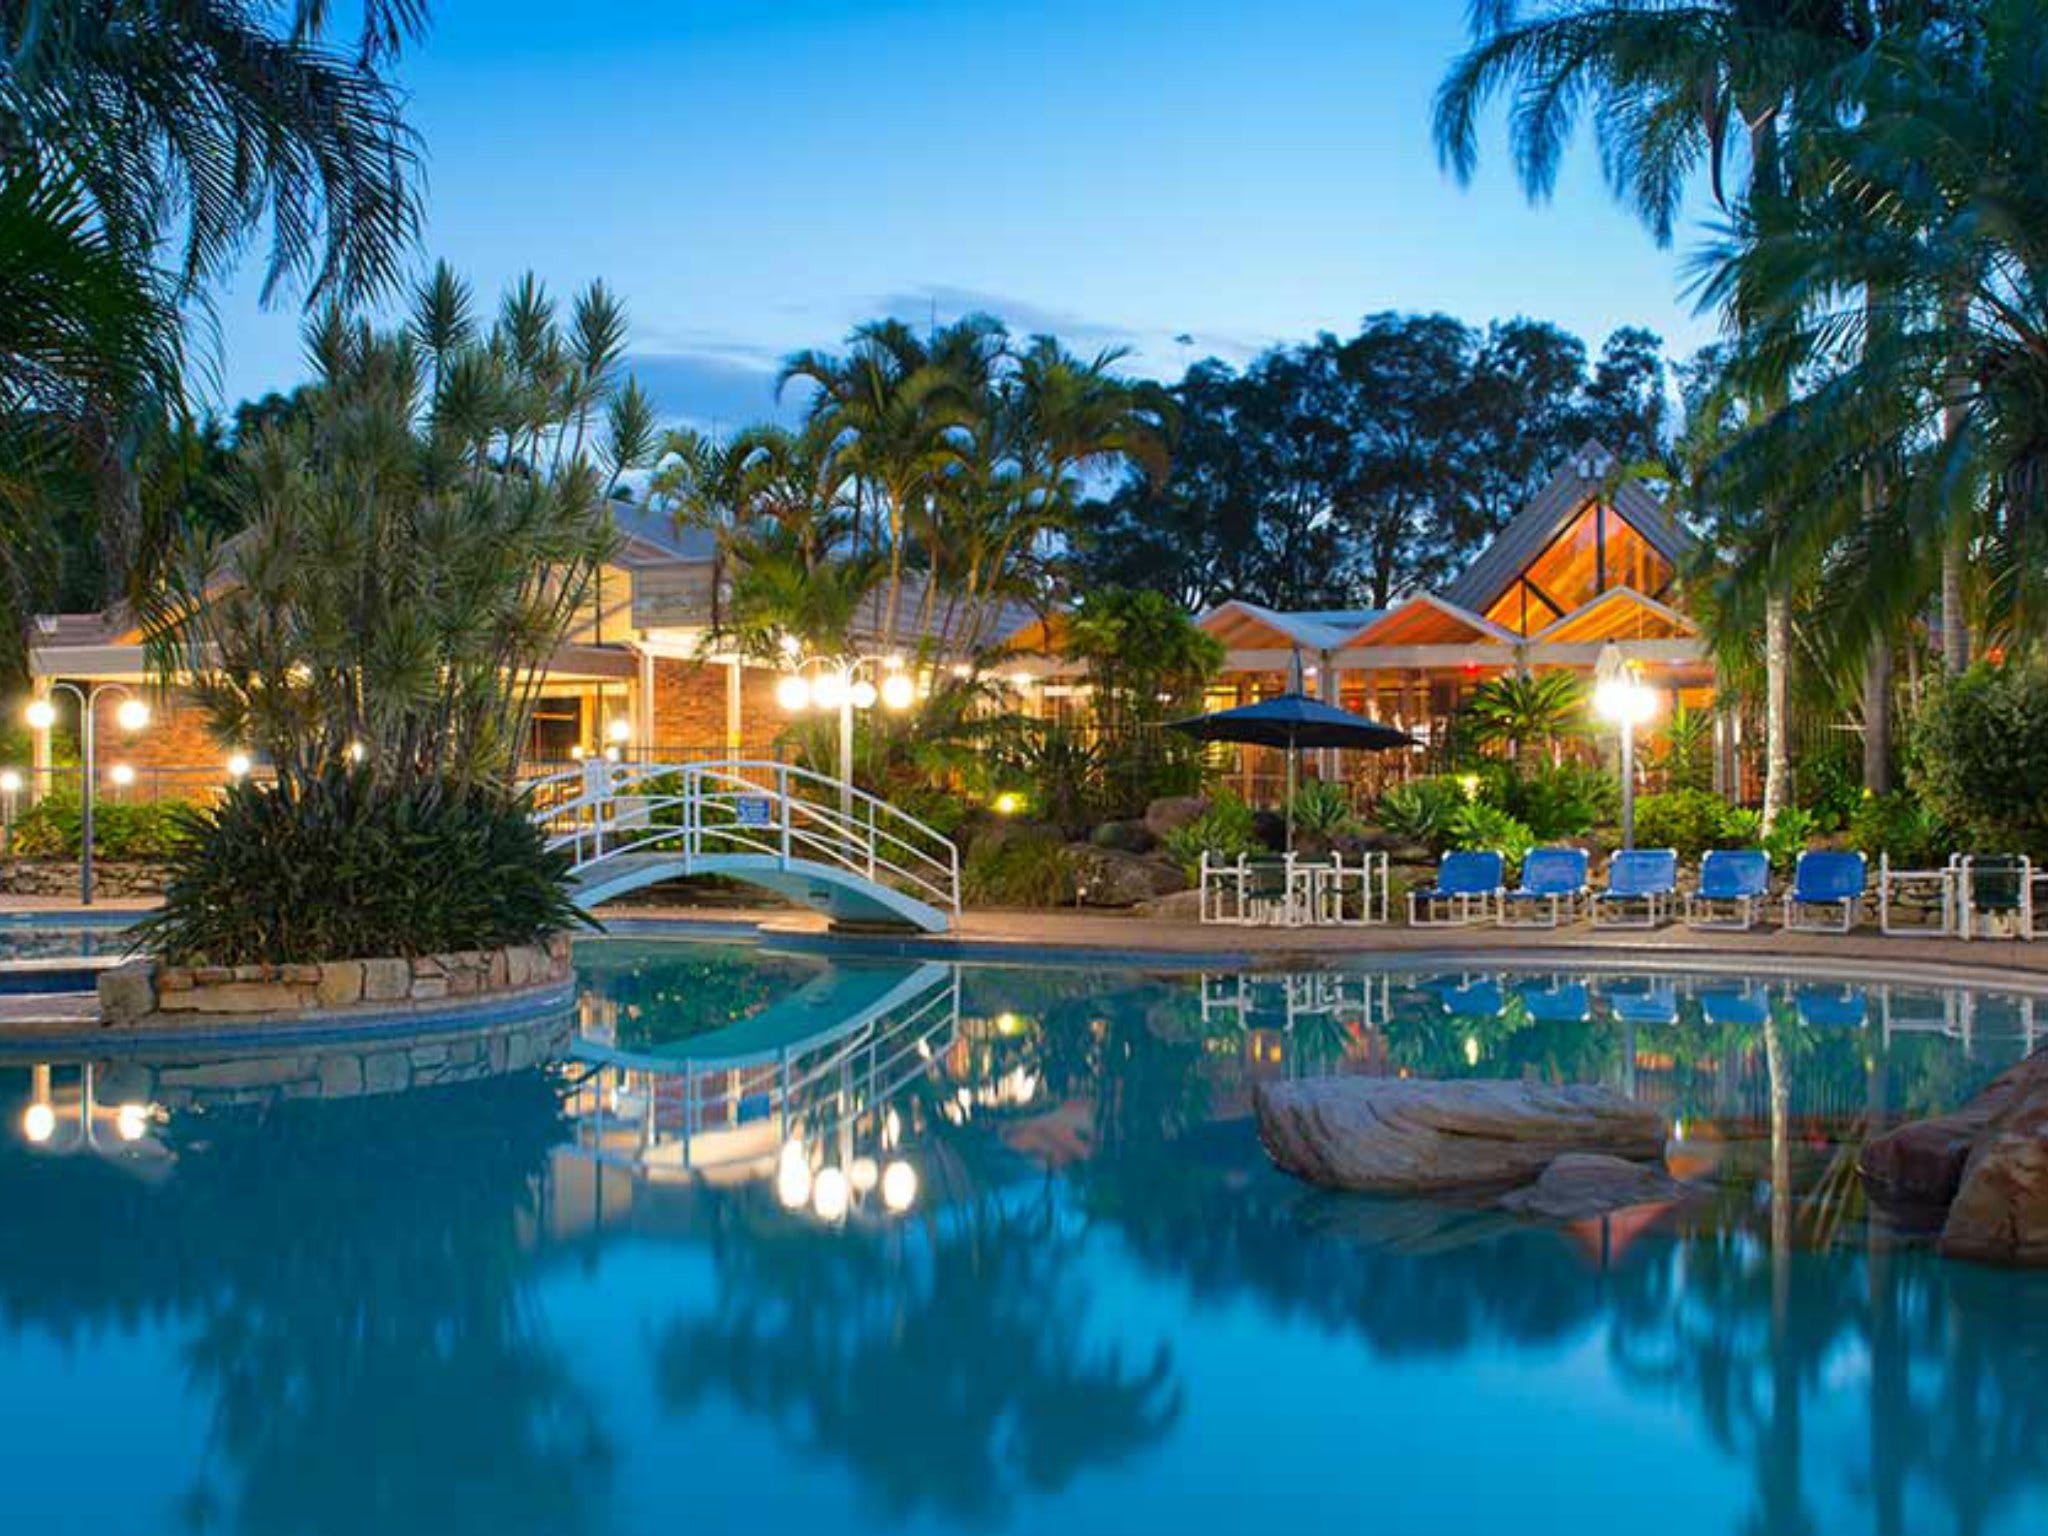 Boambee Bay Resort - Accommodation Mooloolaba